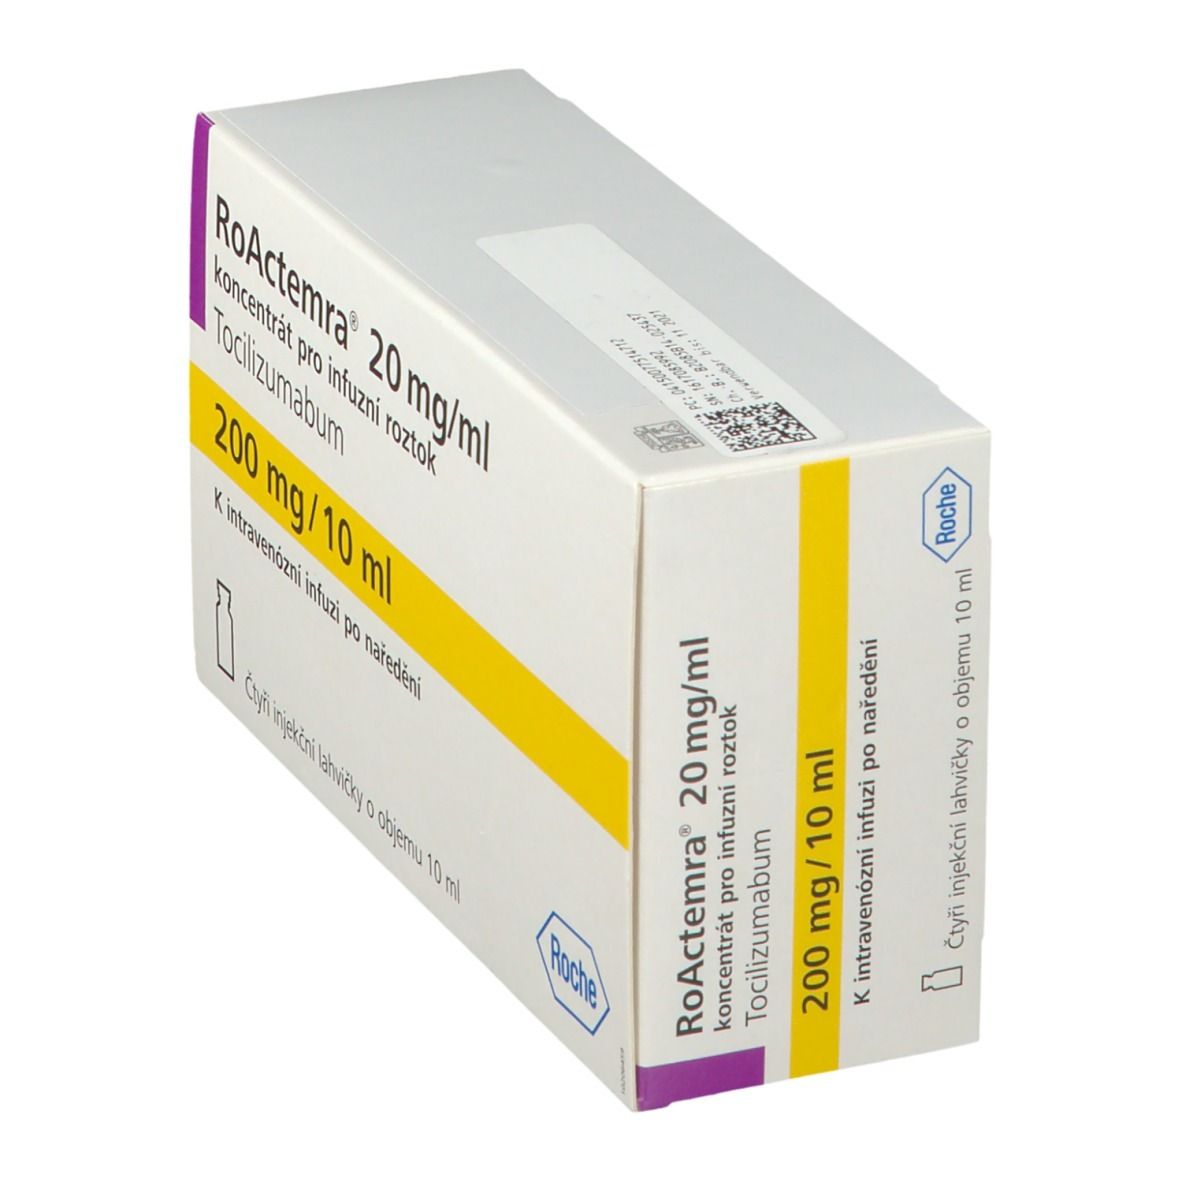 Roactemra 20 mg/ml 200 mg